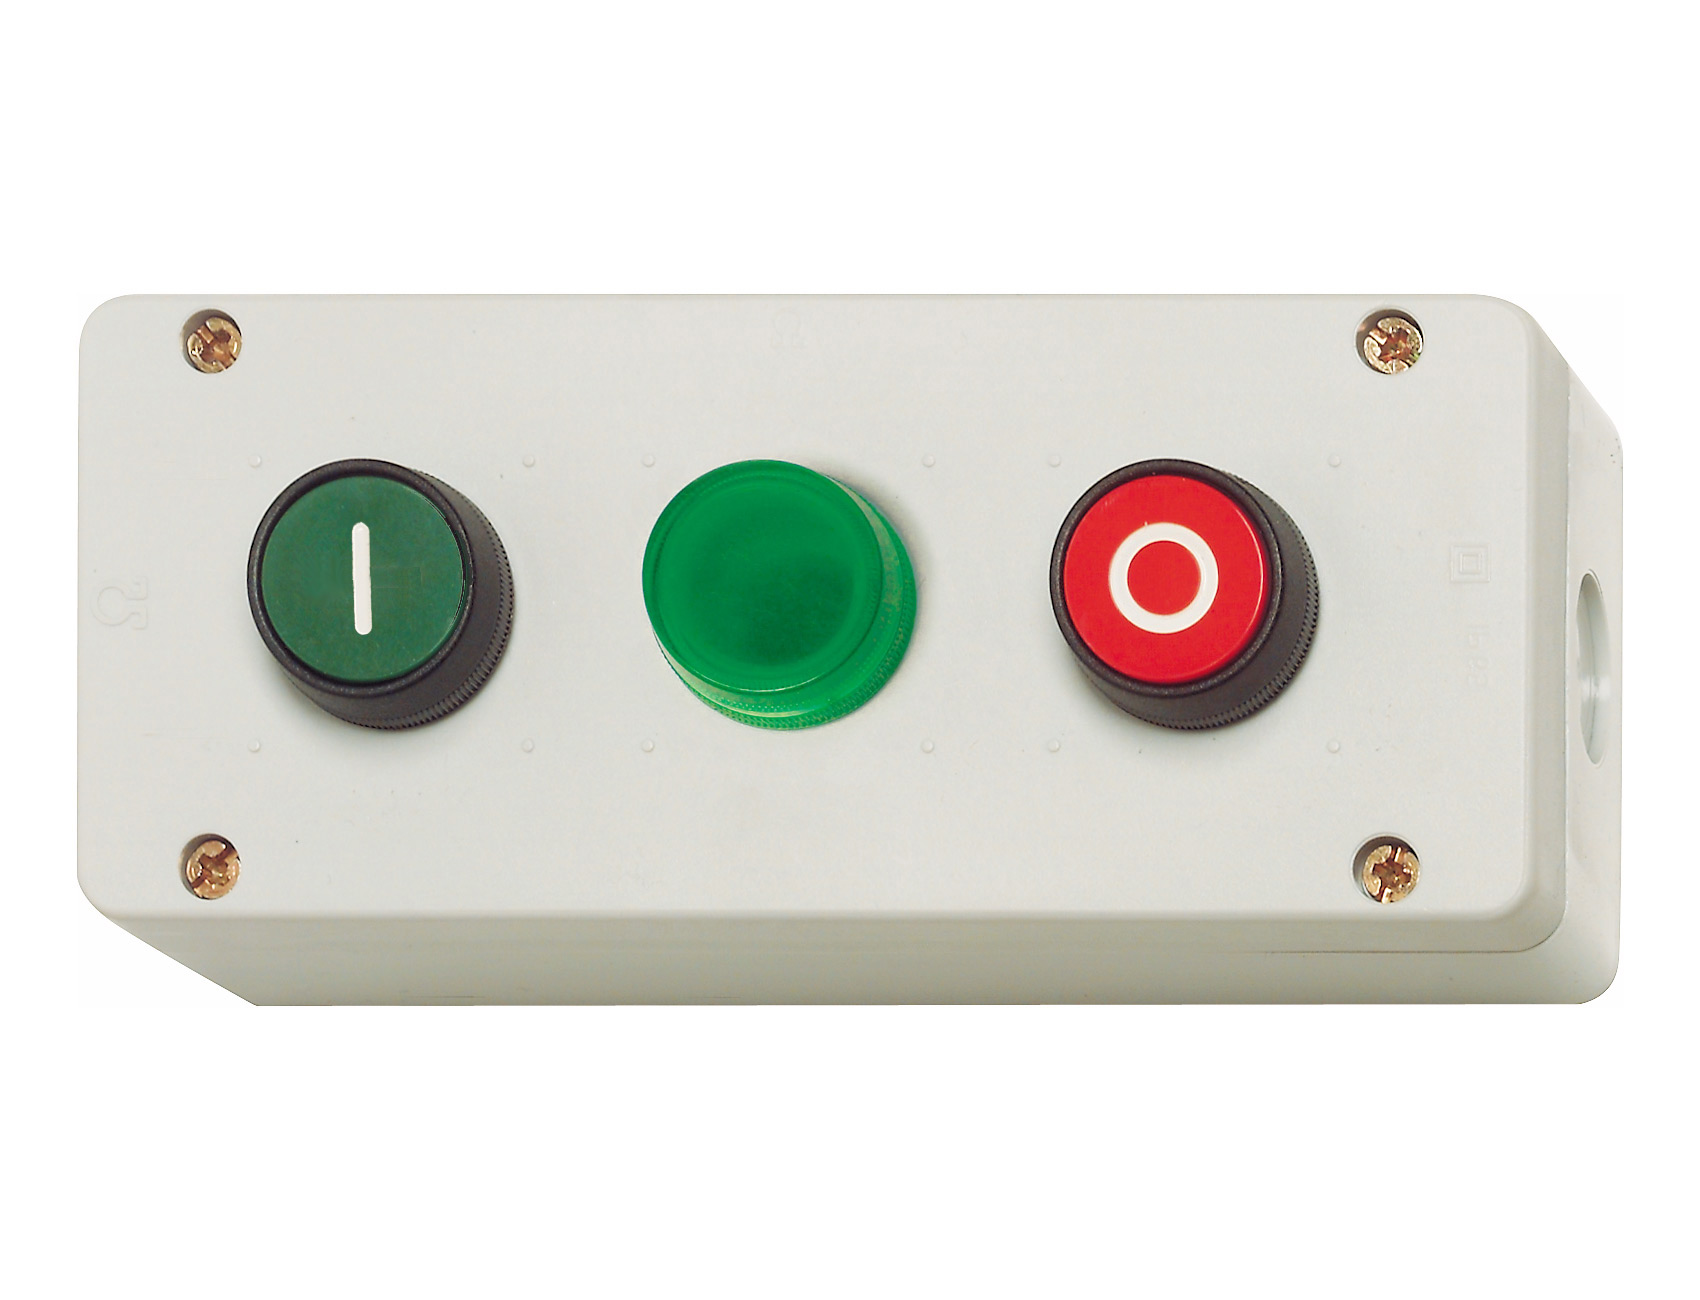 Кнопки "On" и "Off" и зеленый индикатор в корпусе IP67, красная " 0 ", зеленая " I " BG21 GN Benedict